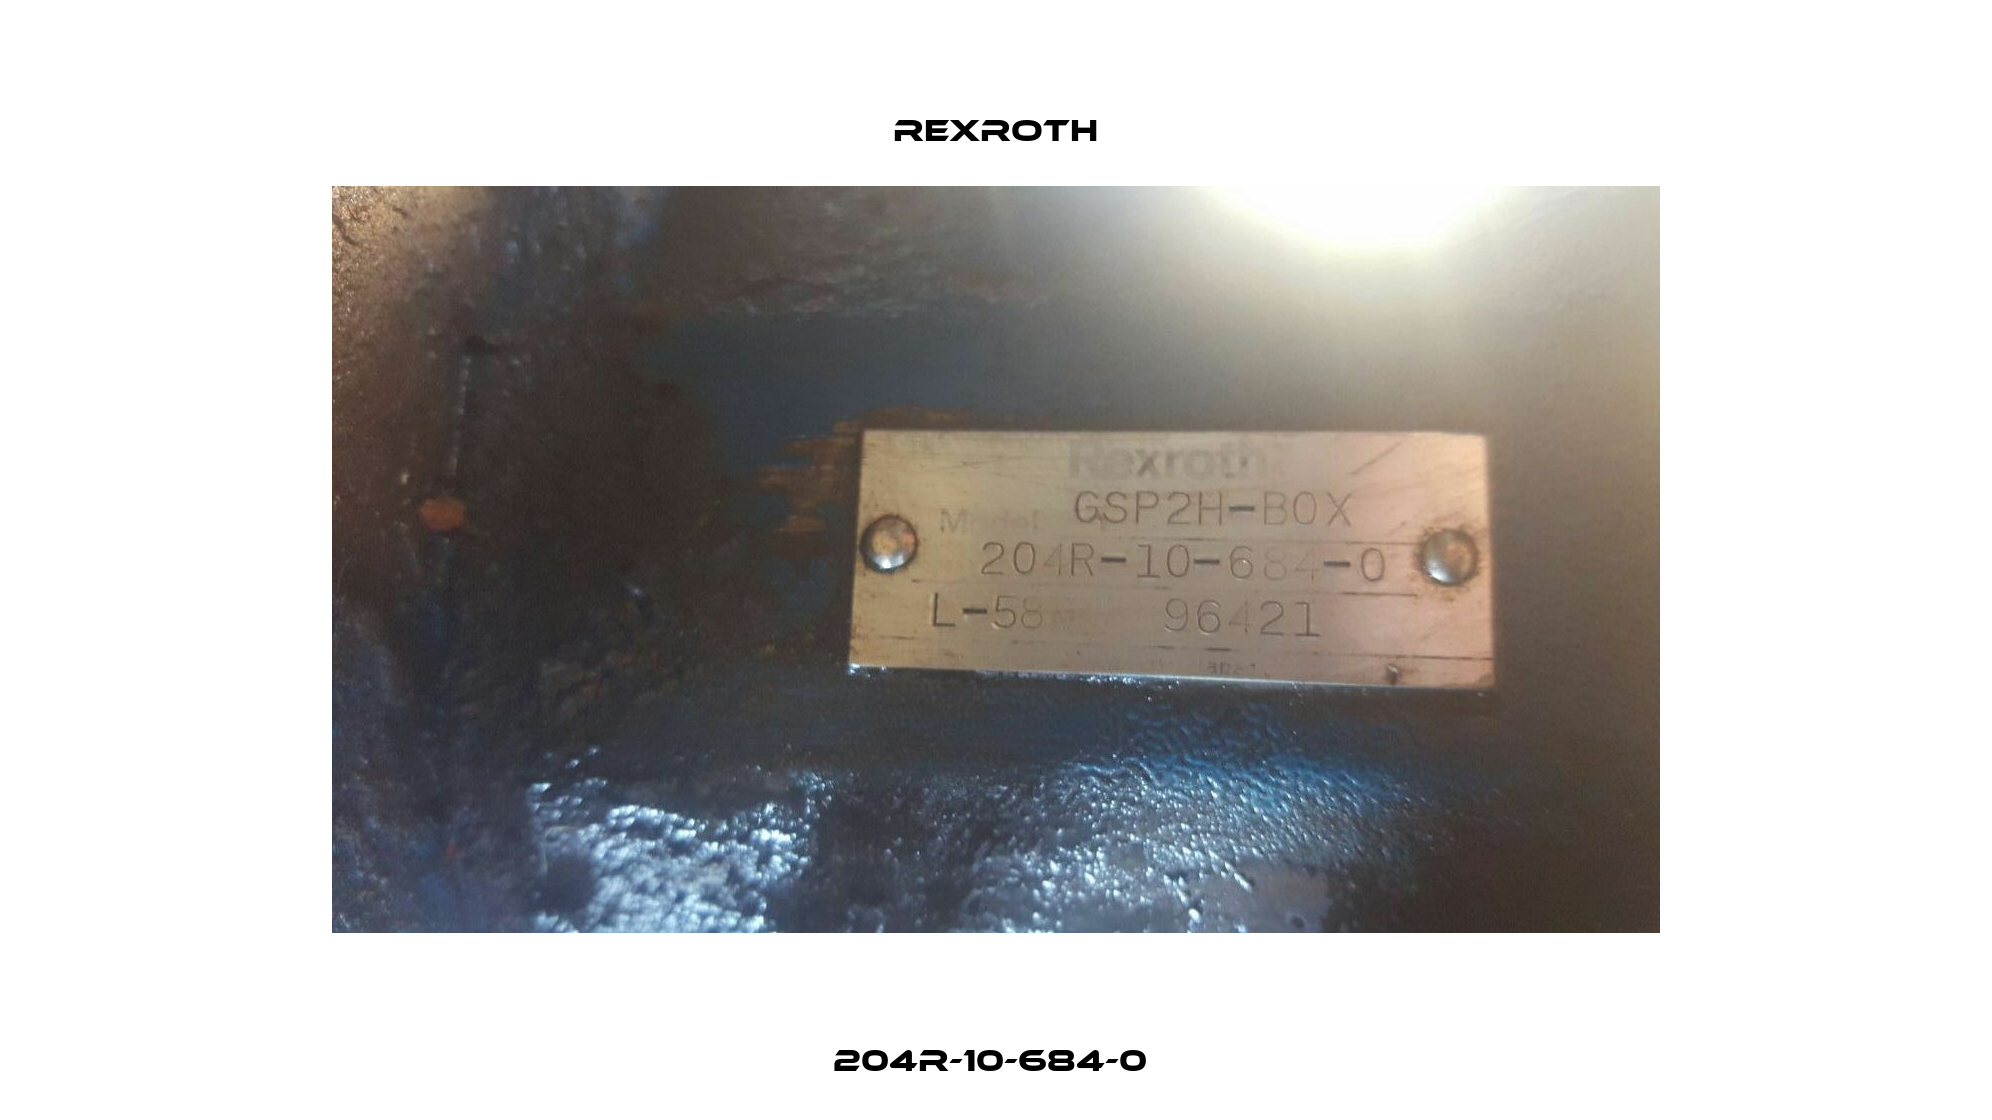 204R-10-684-0  Rexroth